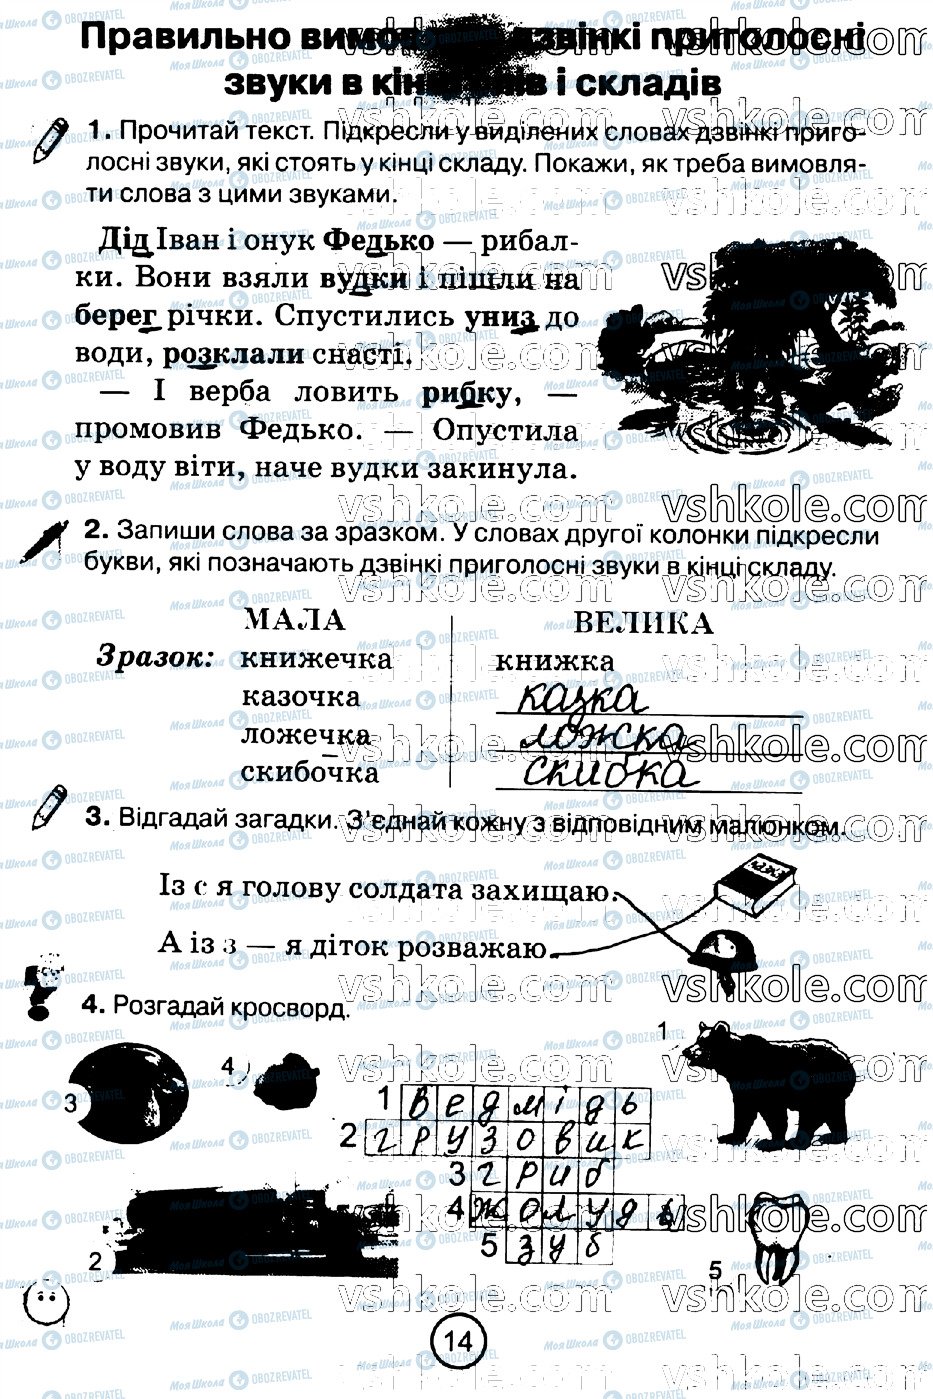 ГДЗ Укр мова 2 класс страница стр14